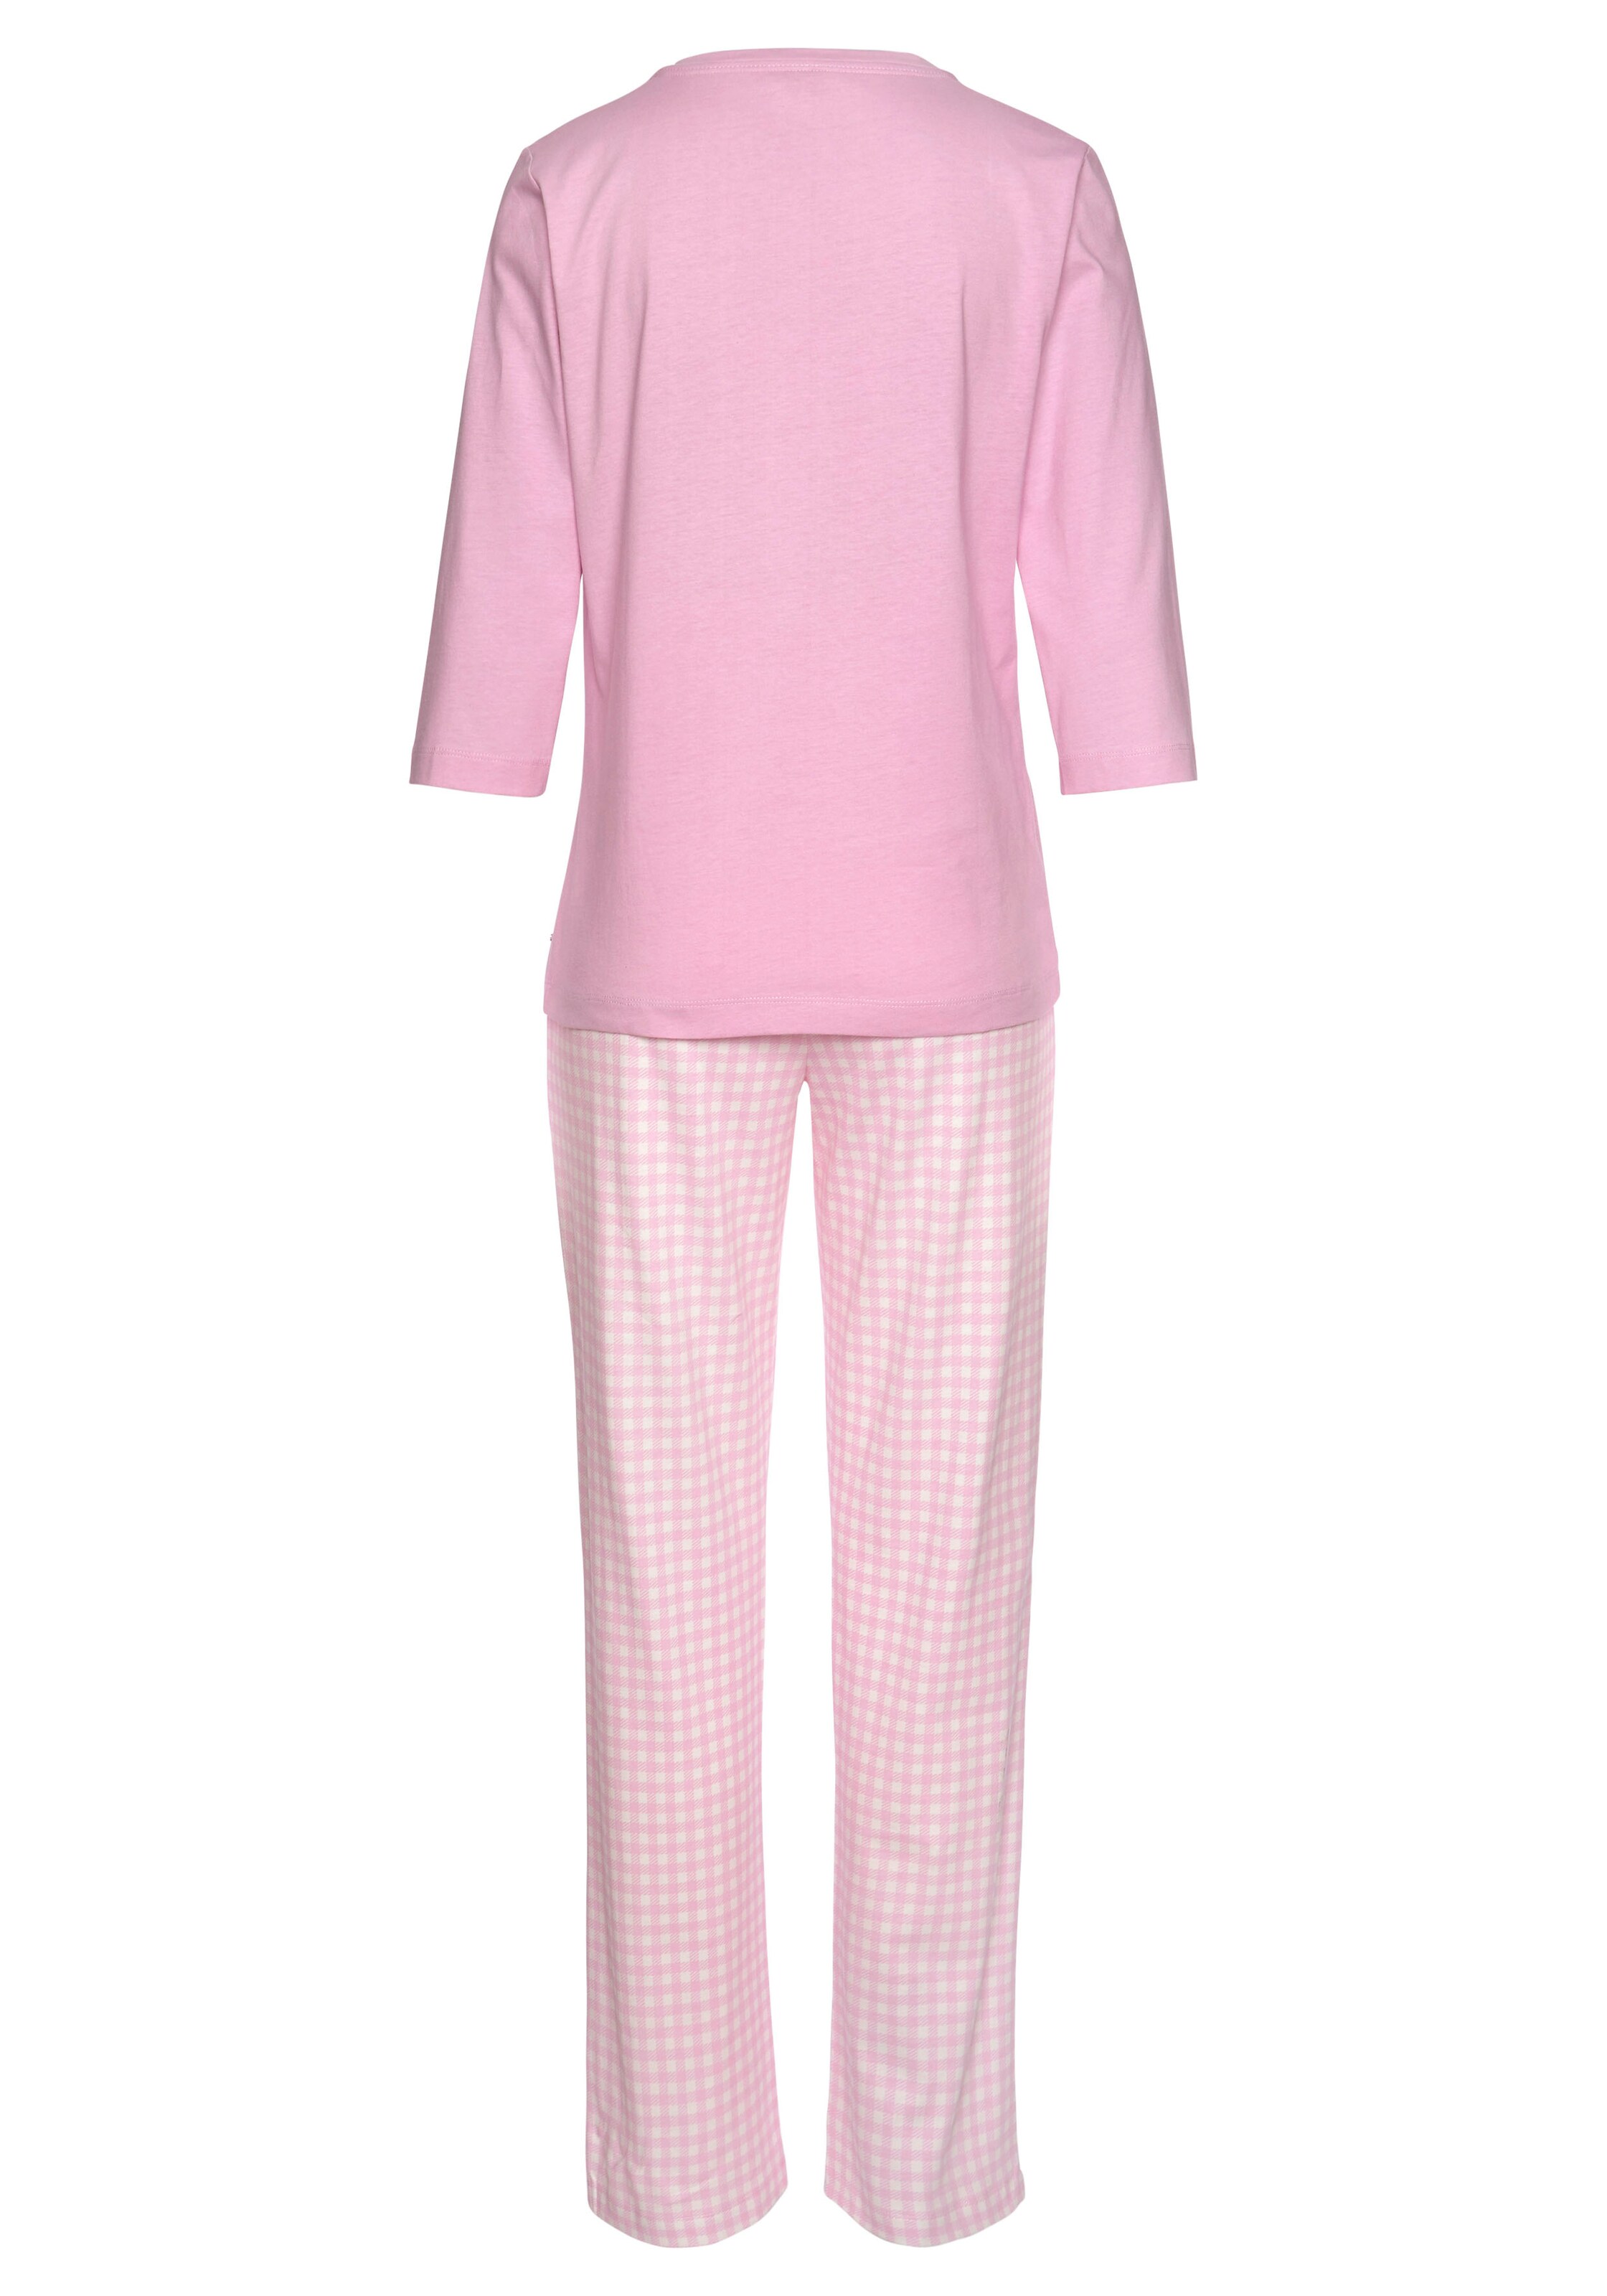 Frauen Wäsche s.Oliver Pyjama in Rosa, Hellpink - DB46286